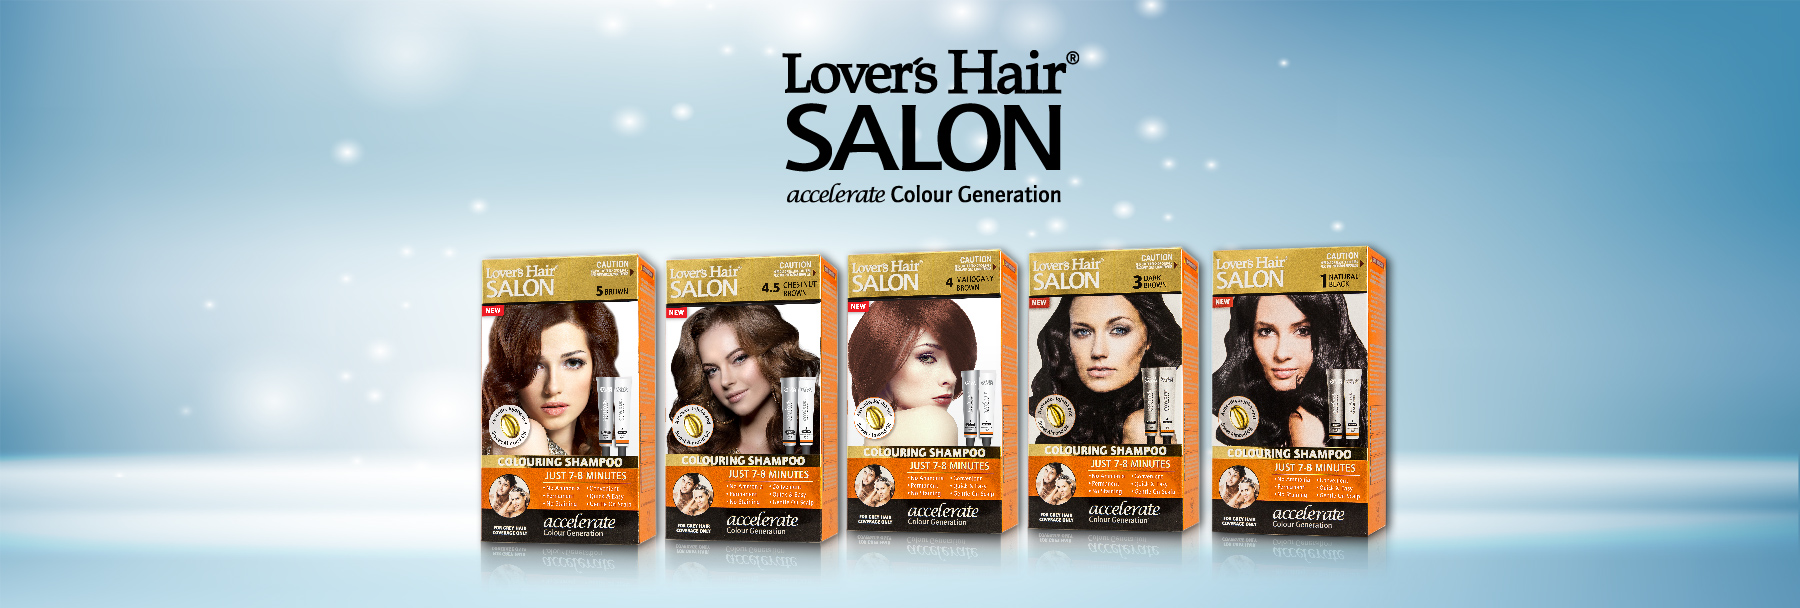 LOVER'S HAIR SALON-COLOURING SHAMPOO-2 x 2.0 oz (60ML) NATURAL BLACK